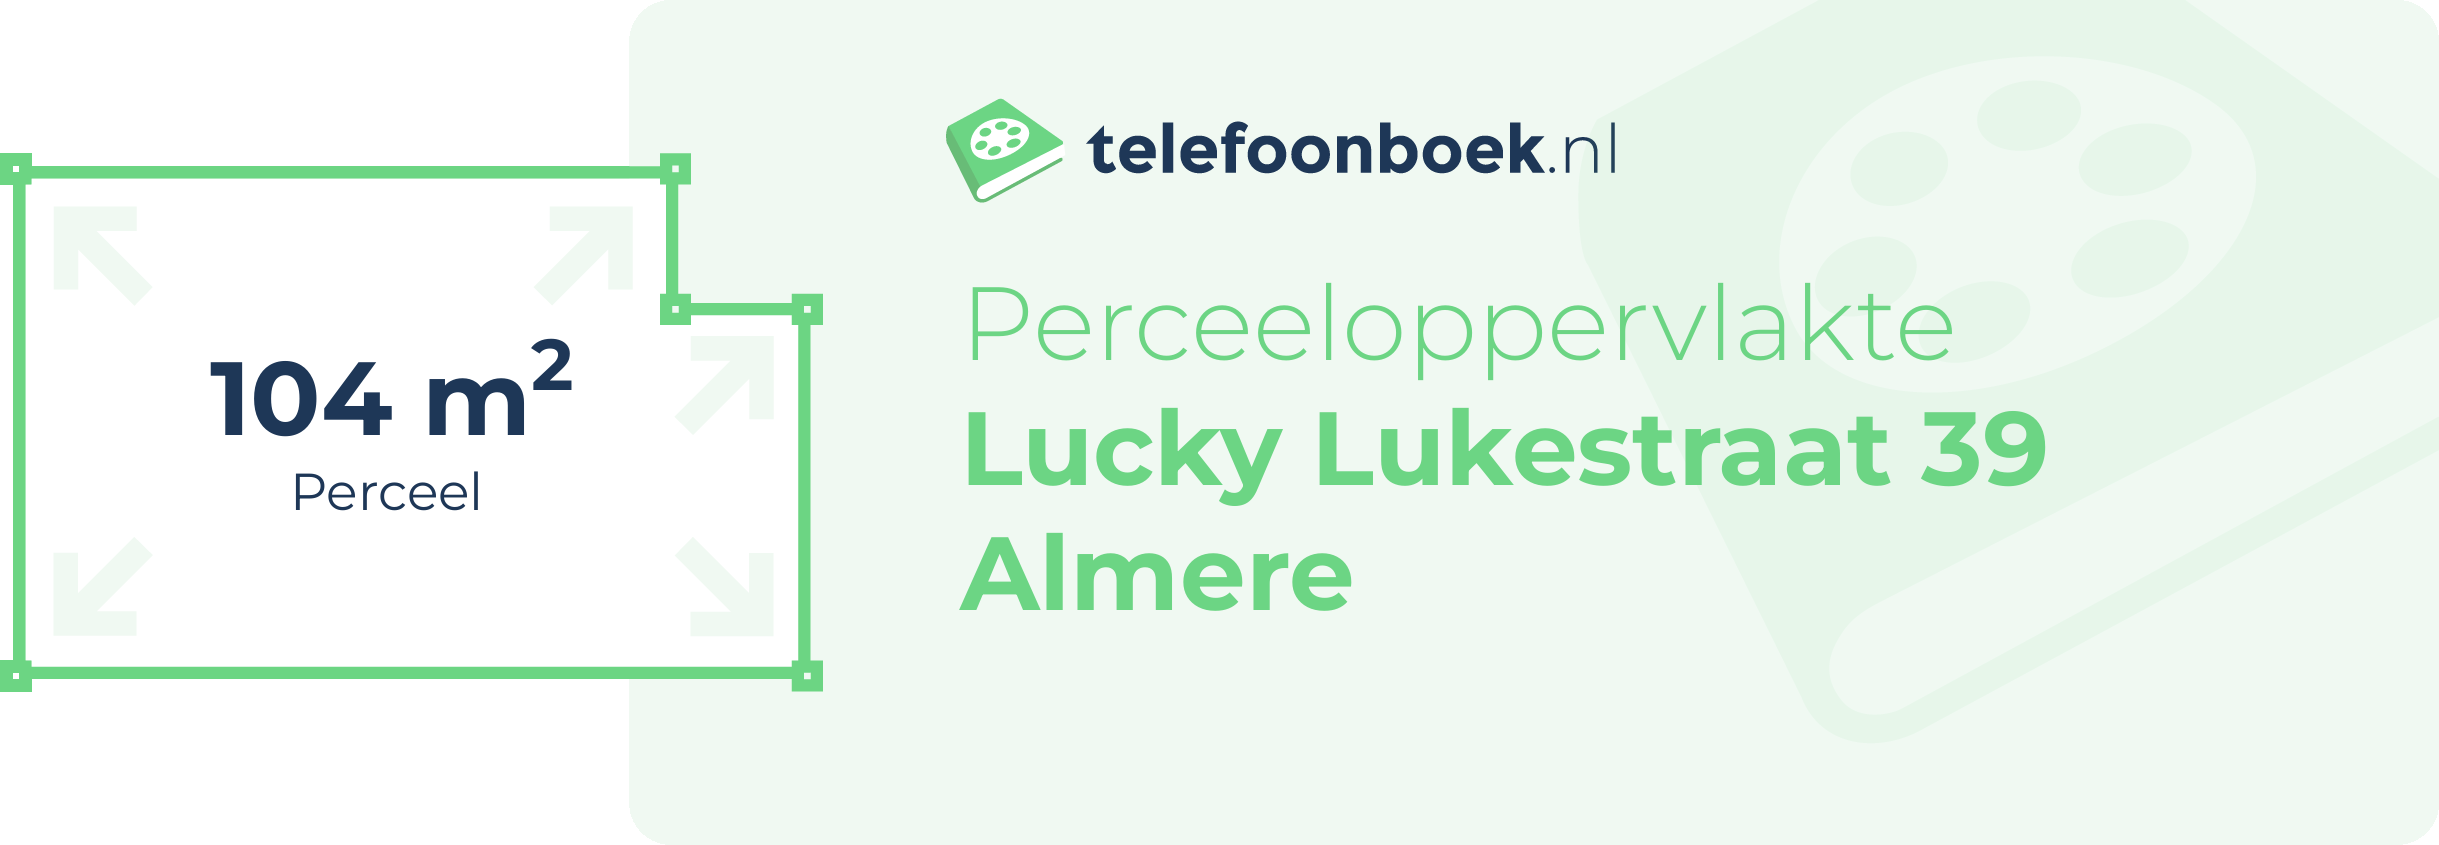 Perceeloppervlakte Lucky Lukestraat 39 Almere